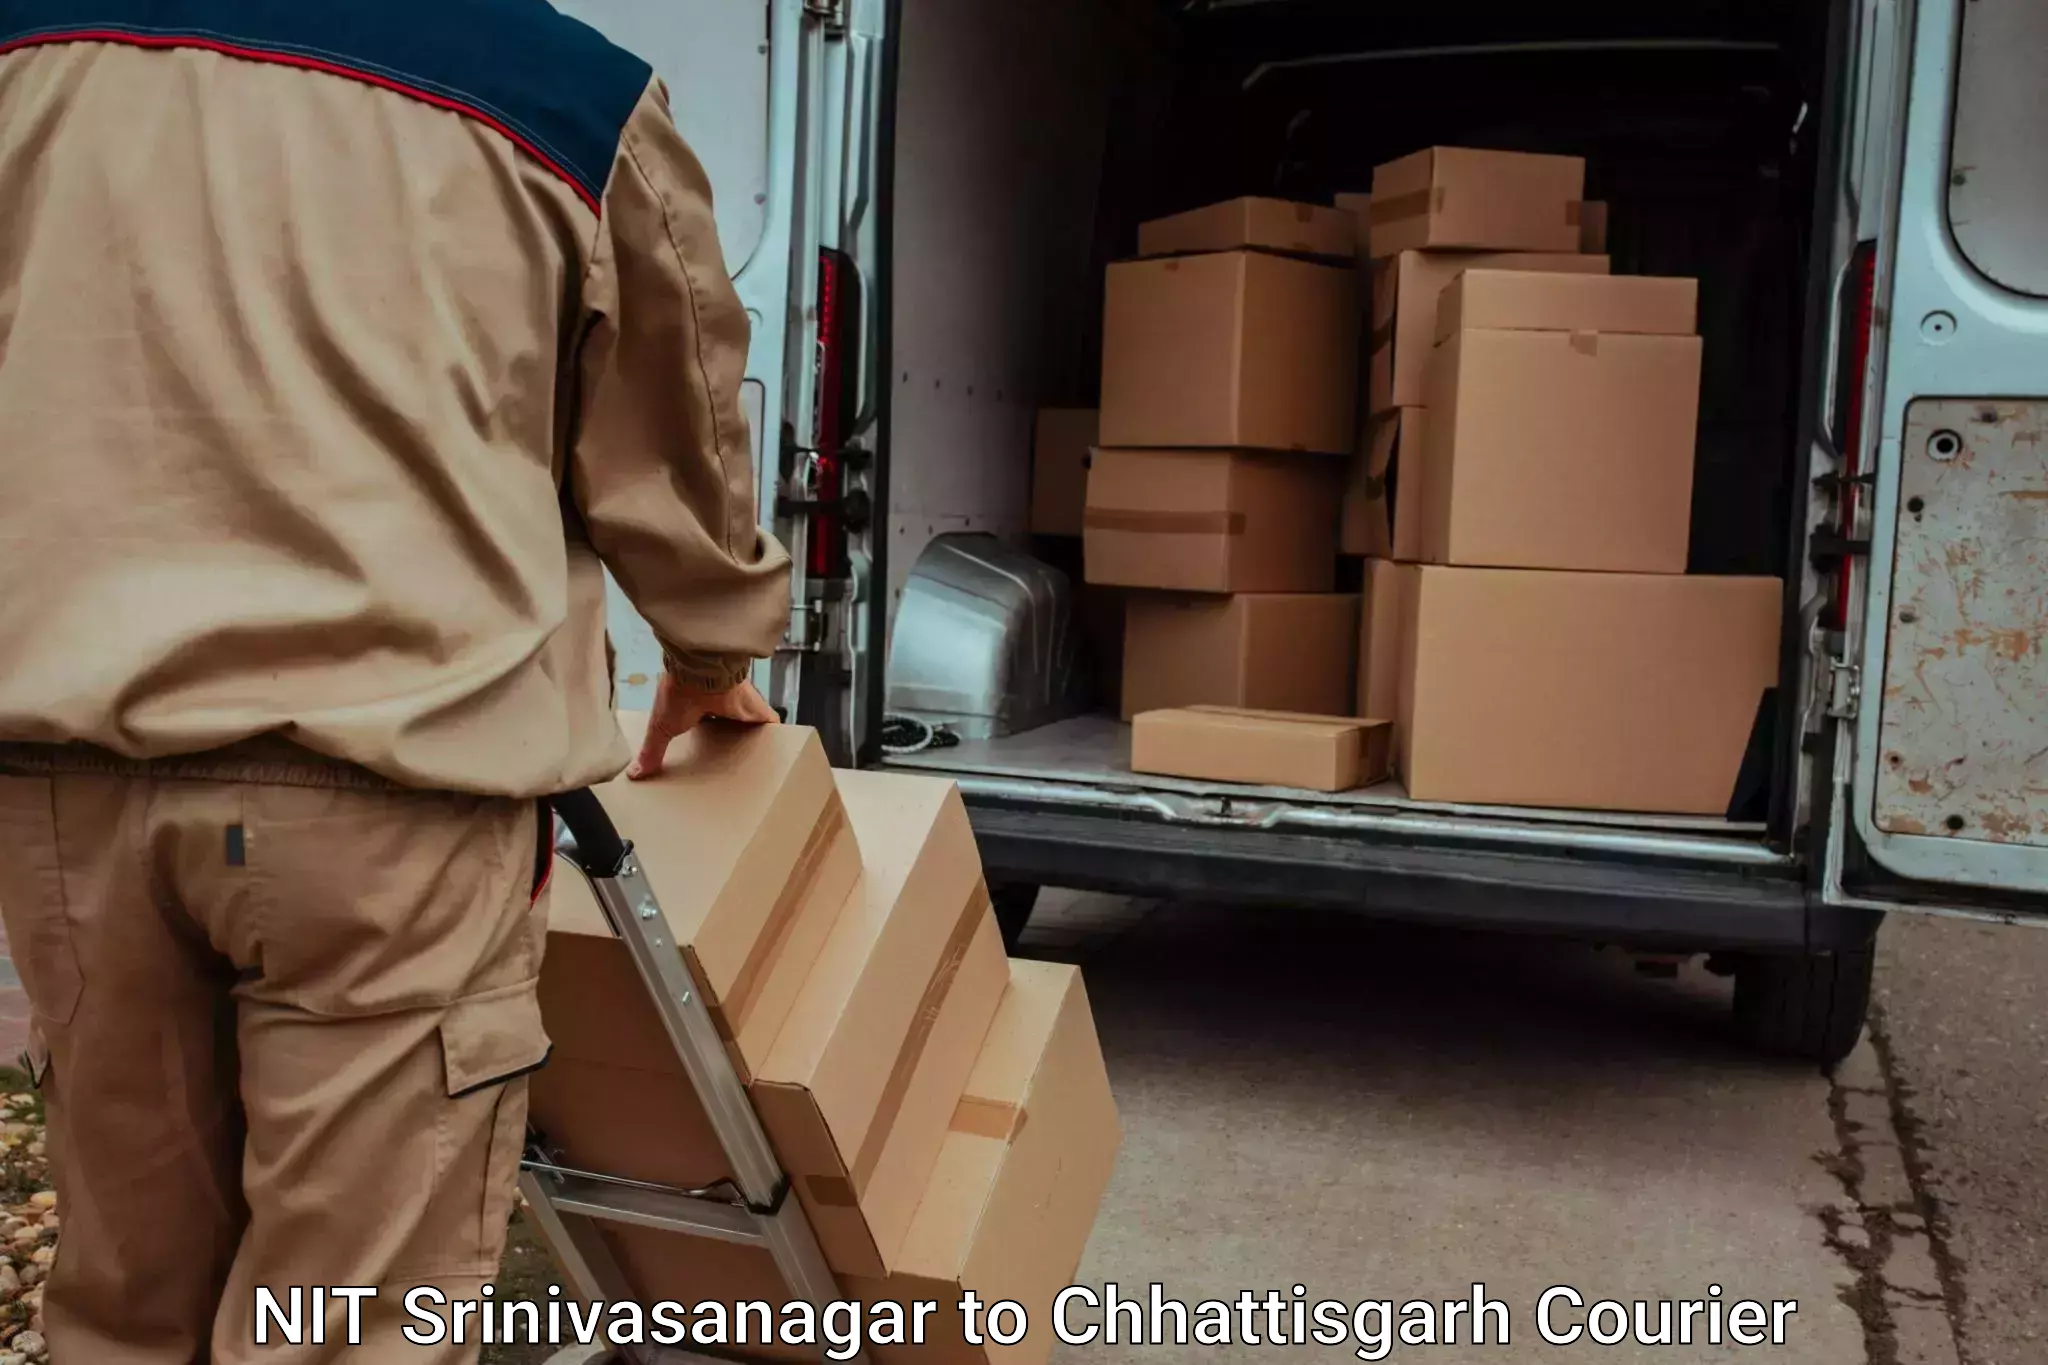 Baggage courier service NIT Srinivasanagar to Bijapur Chhattisgarh